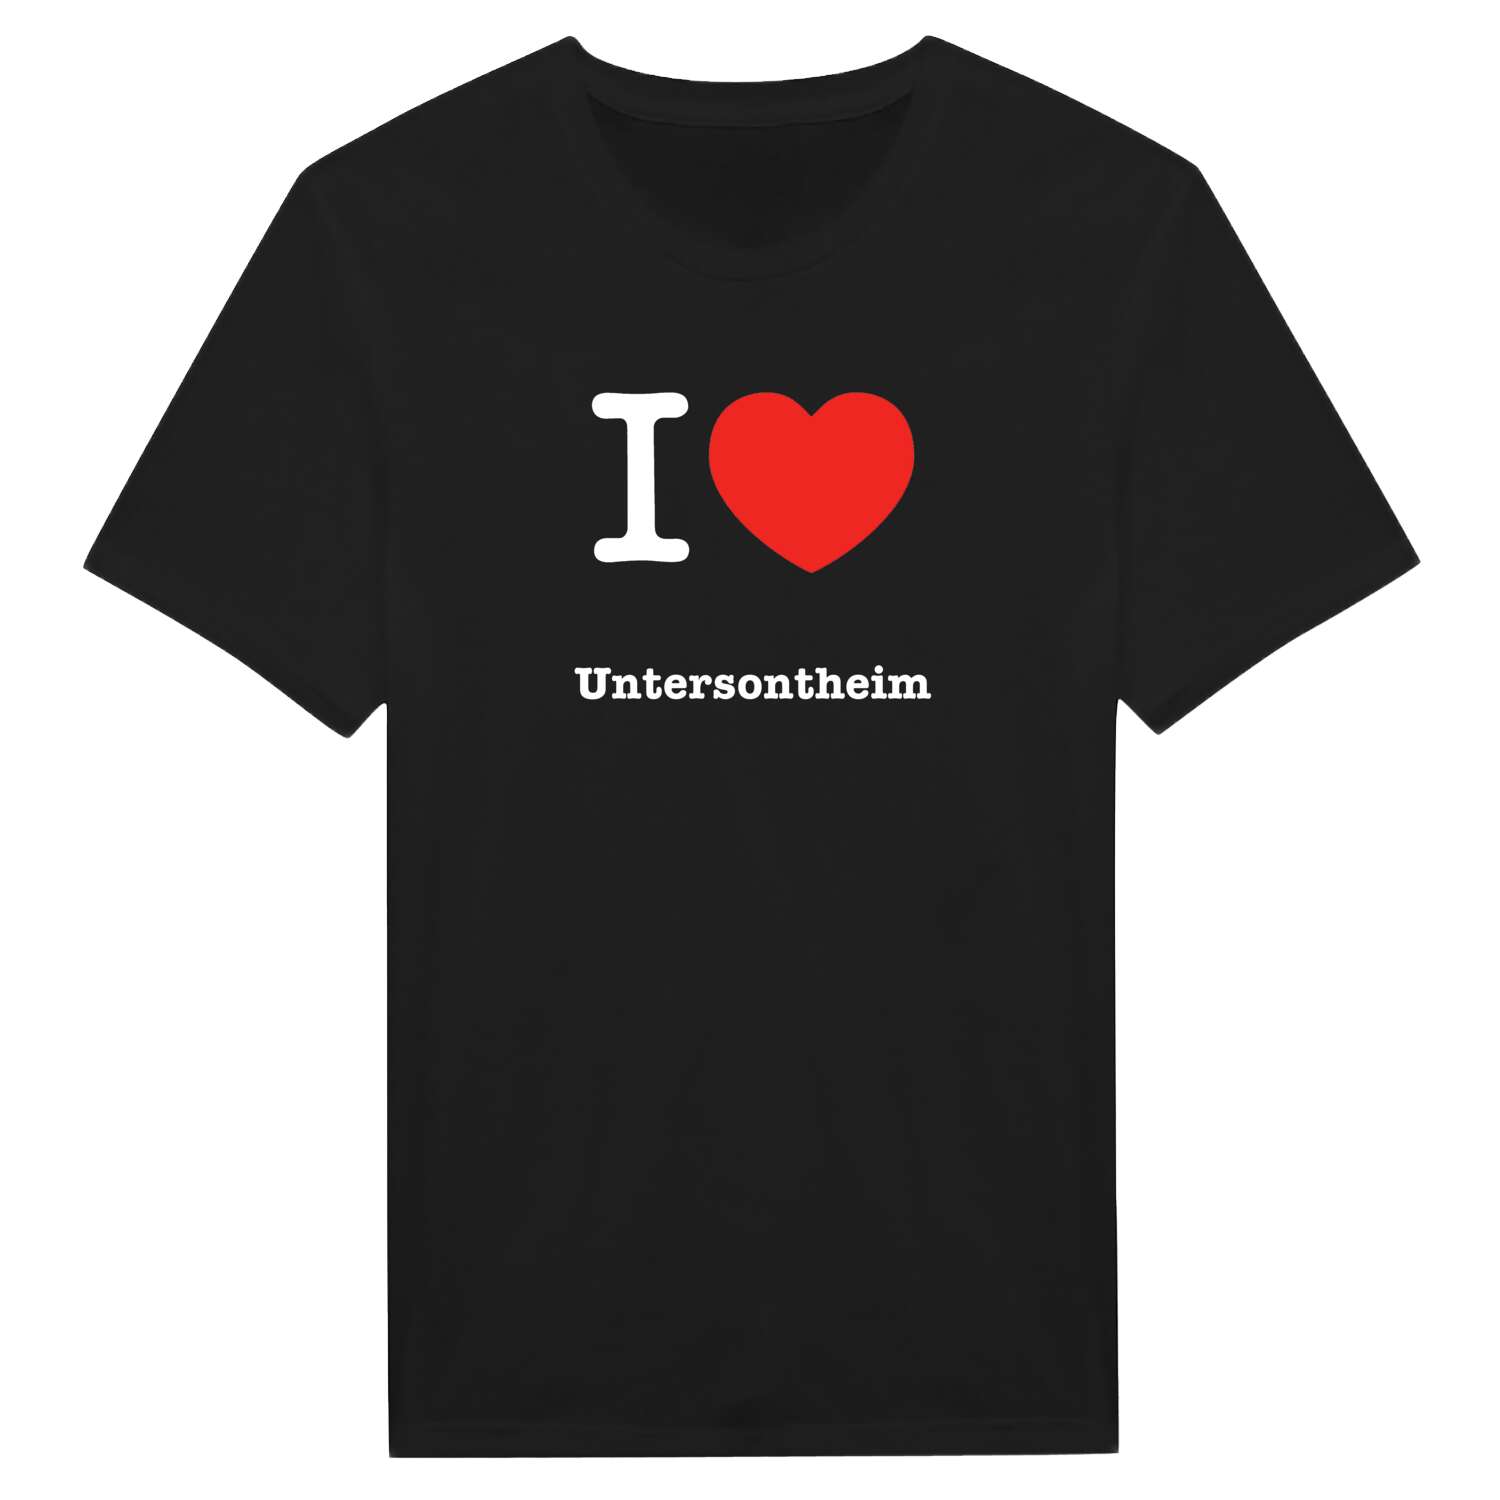 Untersontheim T-Shirt »I love«